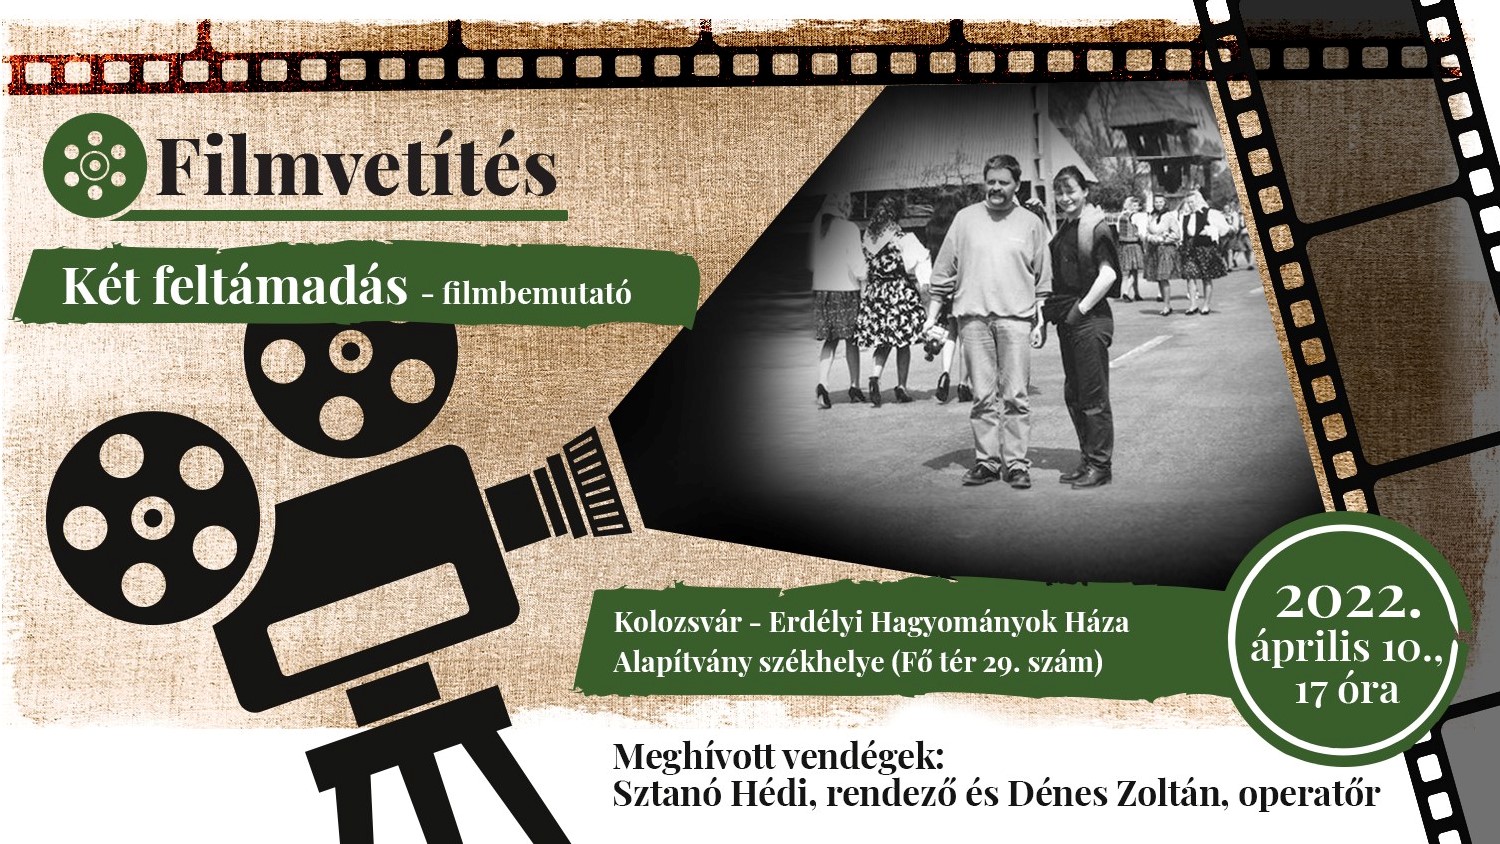 Vasárnap a készítők jelenlétében tekinthető meg a Két feltámadás című dokumentumfilm Kolozsváron